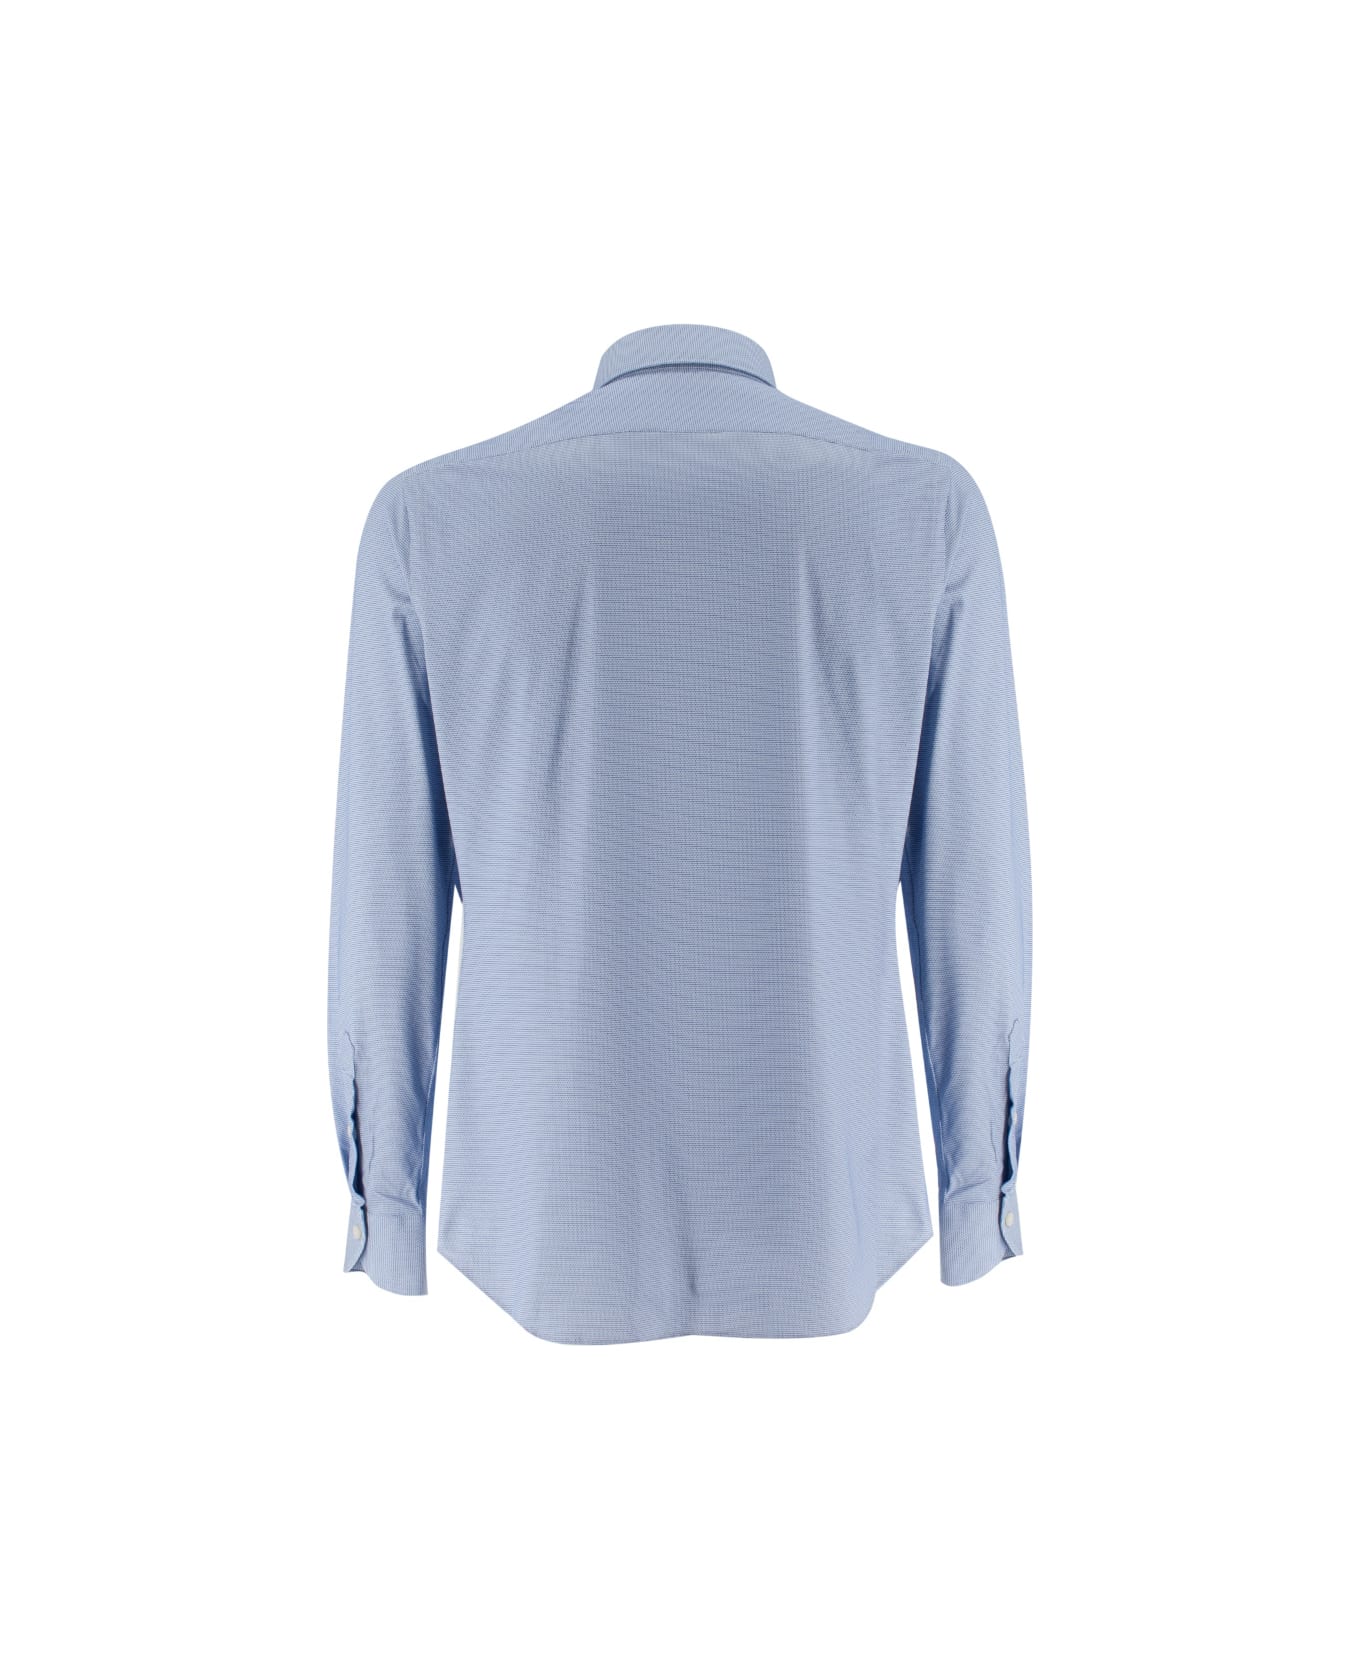 Xacus Shirt - BLU シャツ